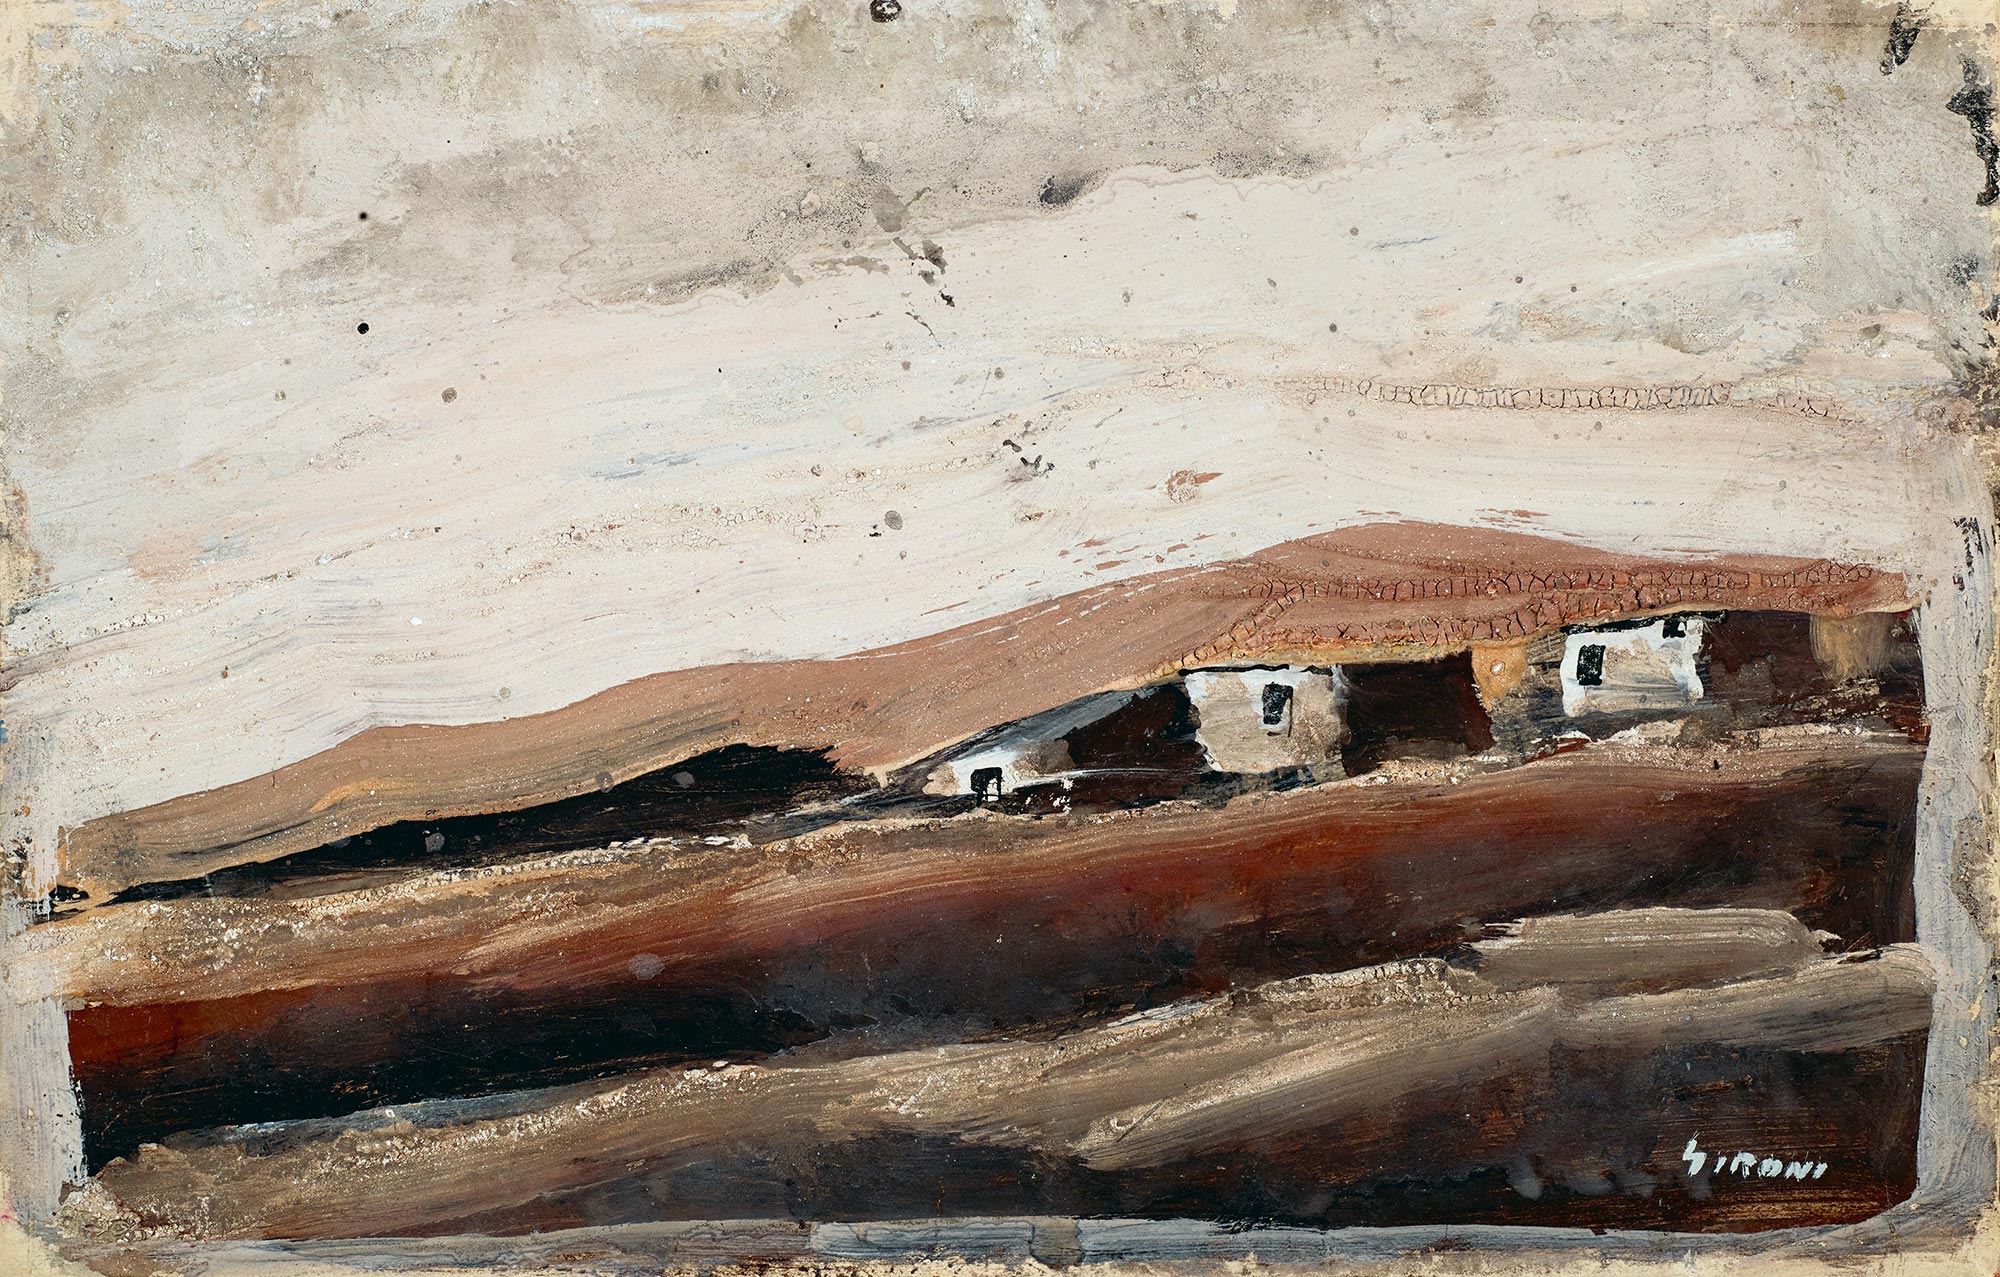 Mario Sironi, Three Huts on a Hillside, n.d.